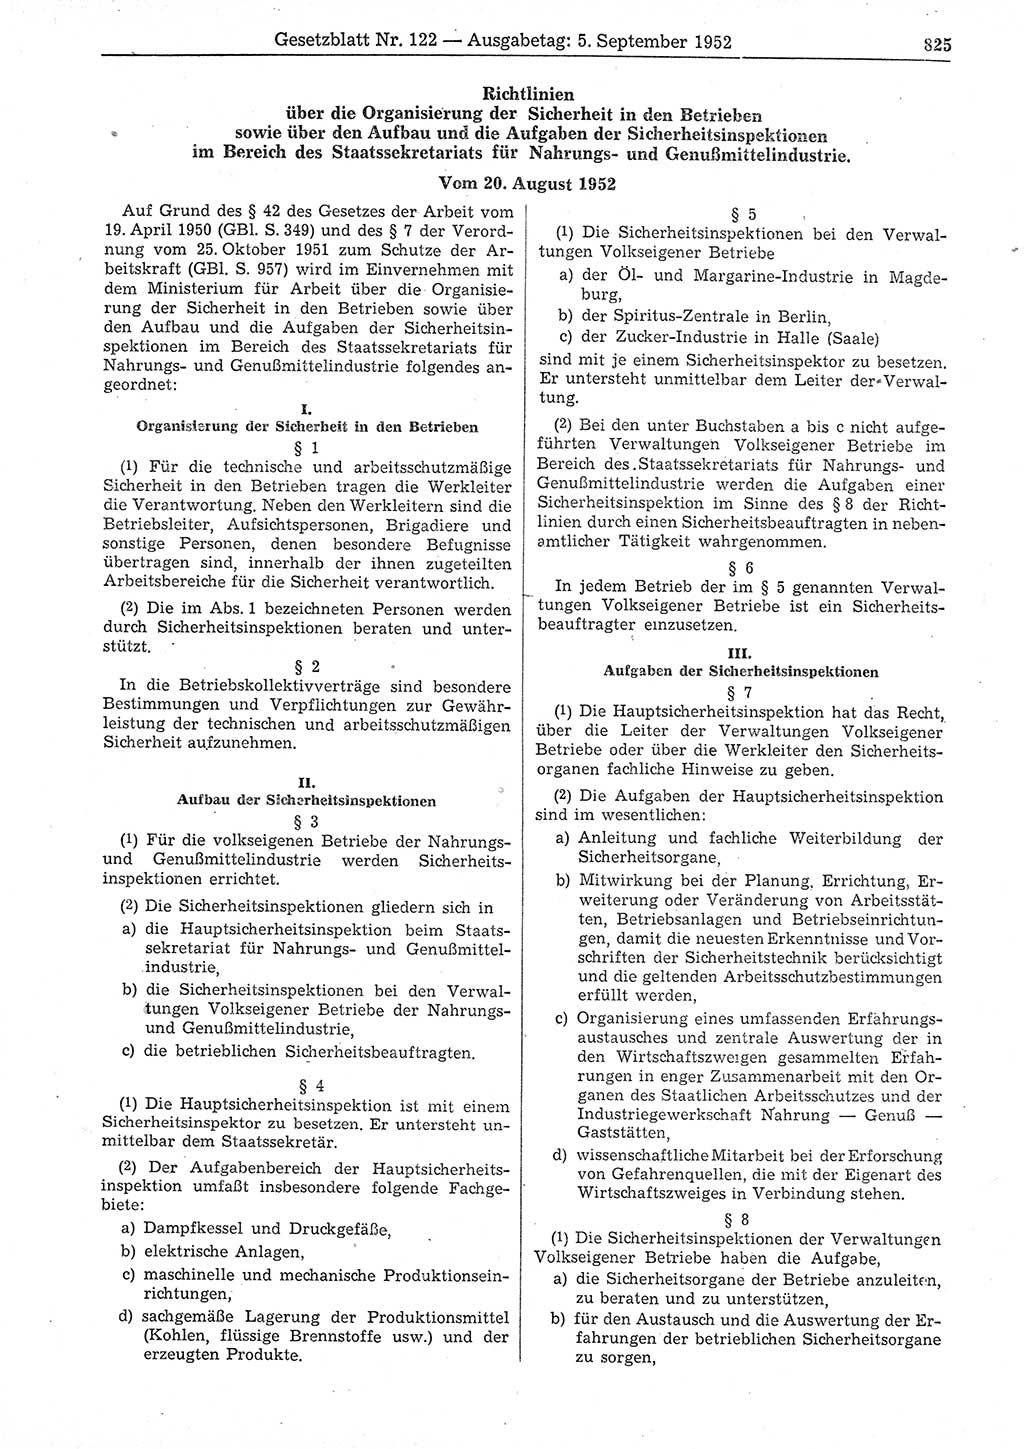 Gesetzblatt (GBl.) der Deutschen Demokratischen Republik (DDR) 1952, Seite 825 (GBl. DDR 1952, S. 825)